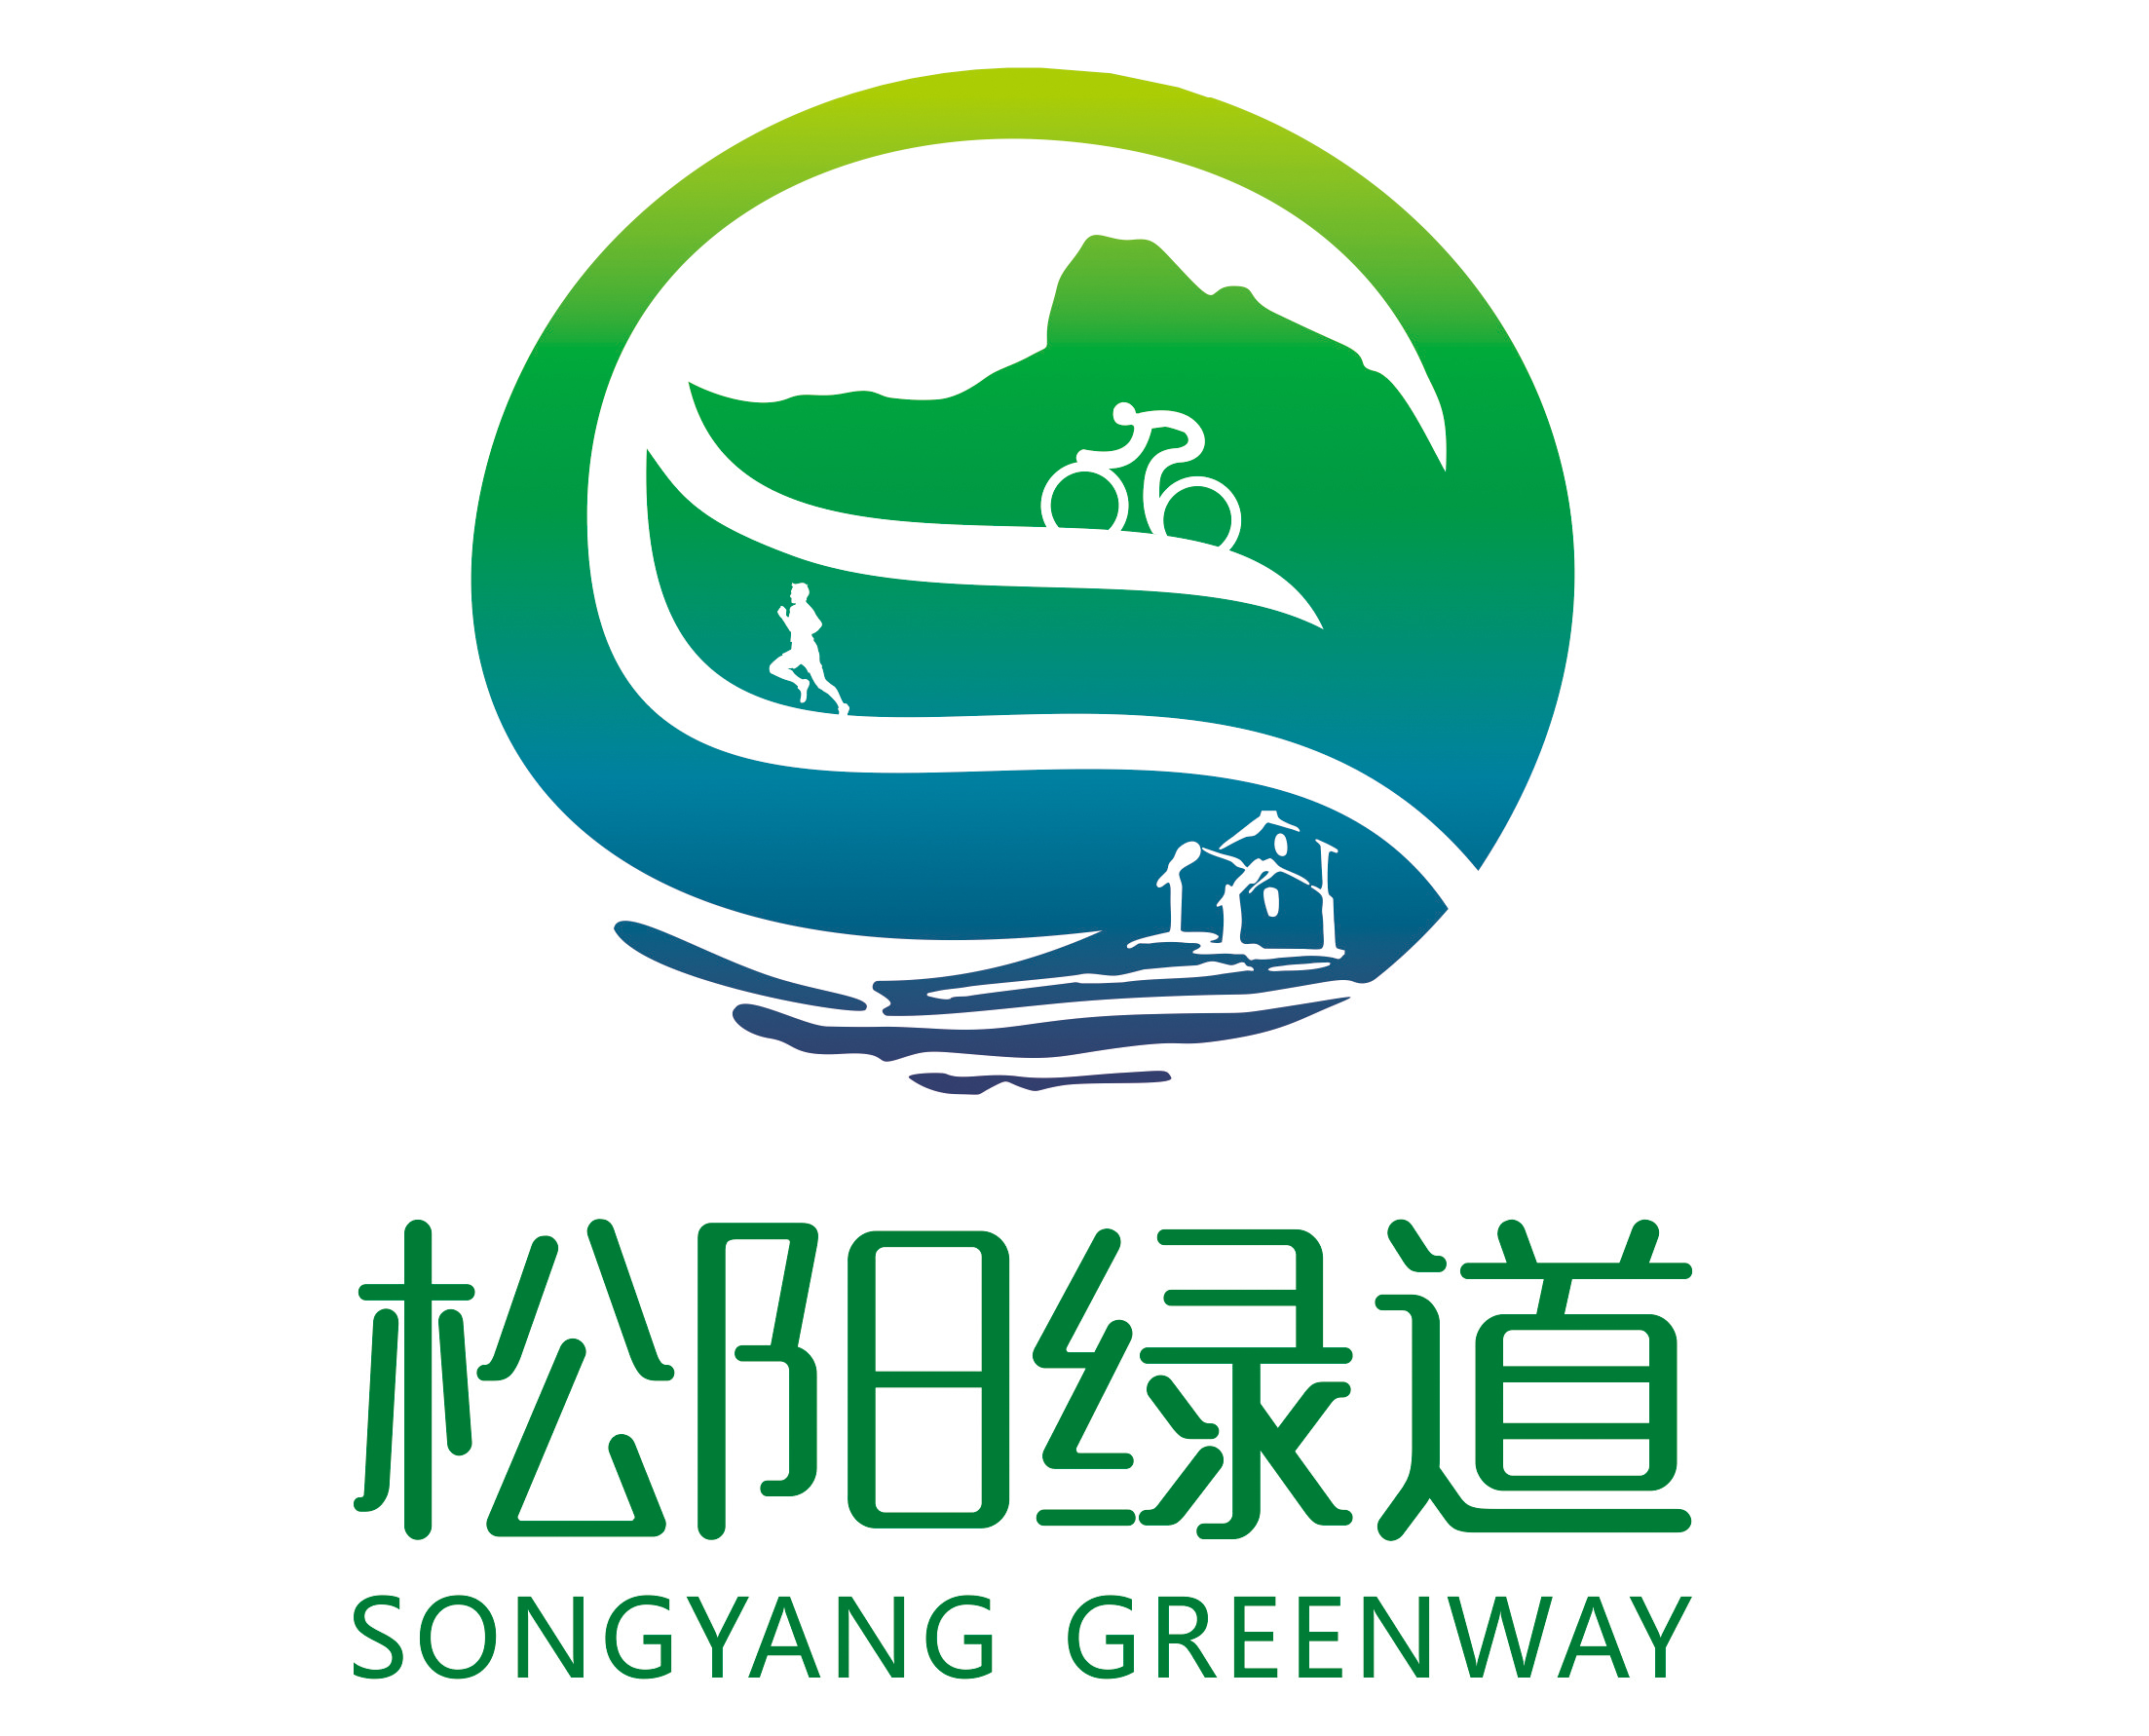 松阳县发展和改革局关于启用松阳绿道形象标识的公告